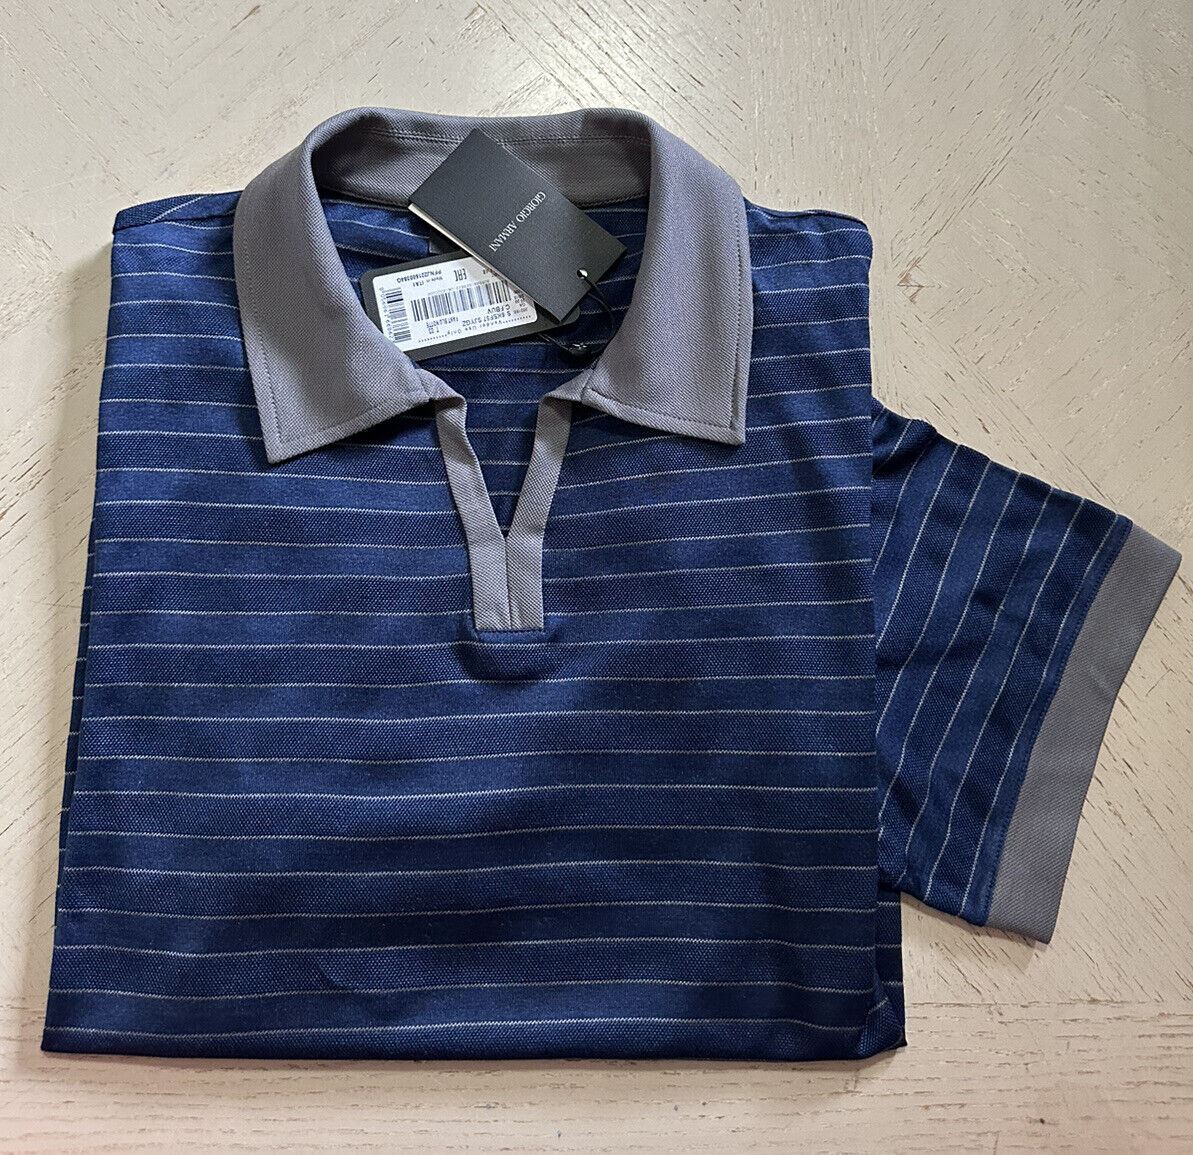 NWT $1025 Мужская шелковая футболка Giorgio Armani синяя 40 США/50 ЕС (М) Италия